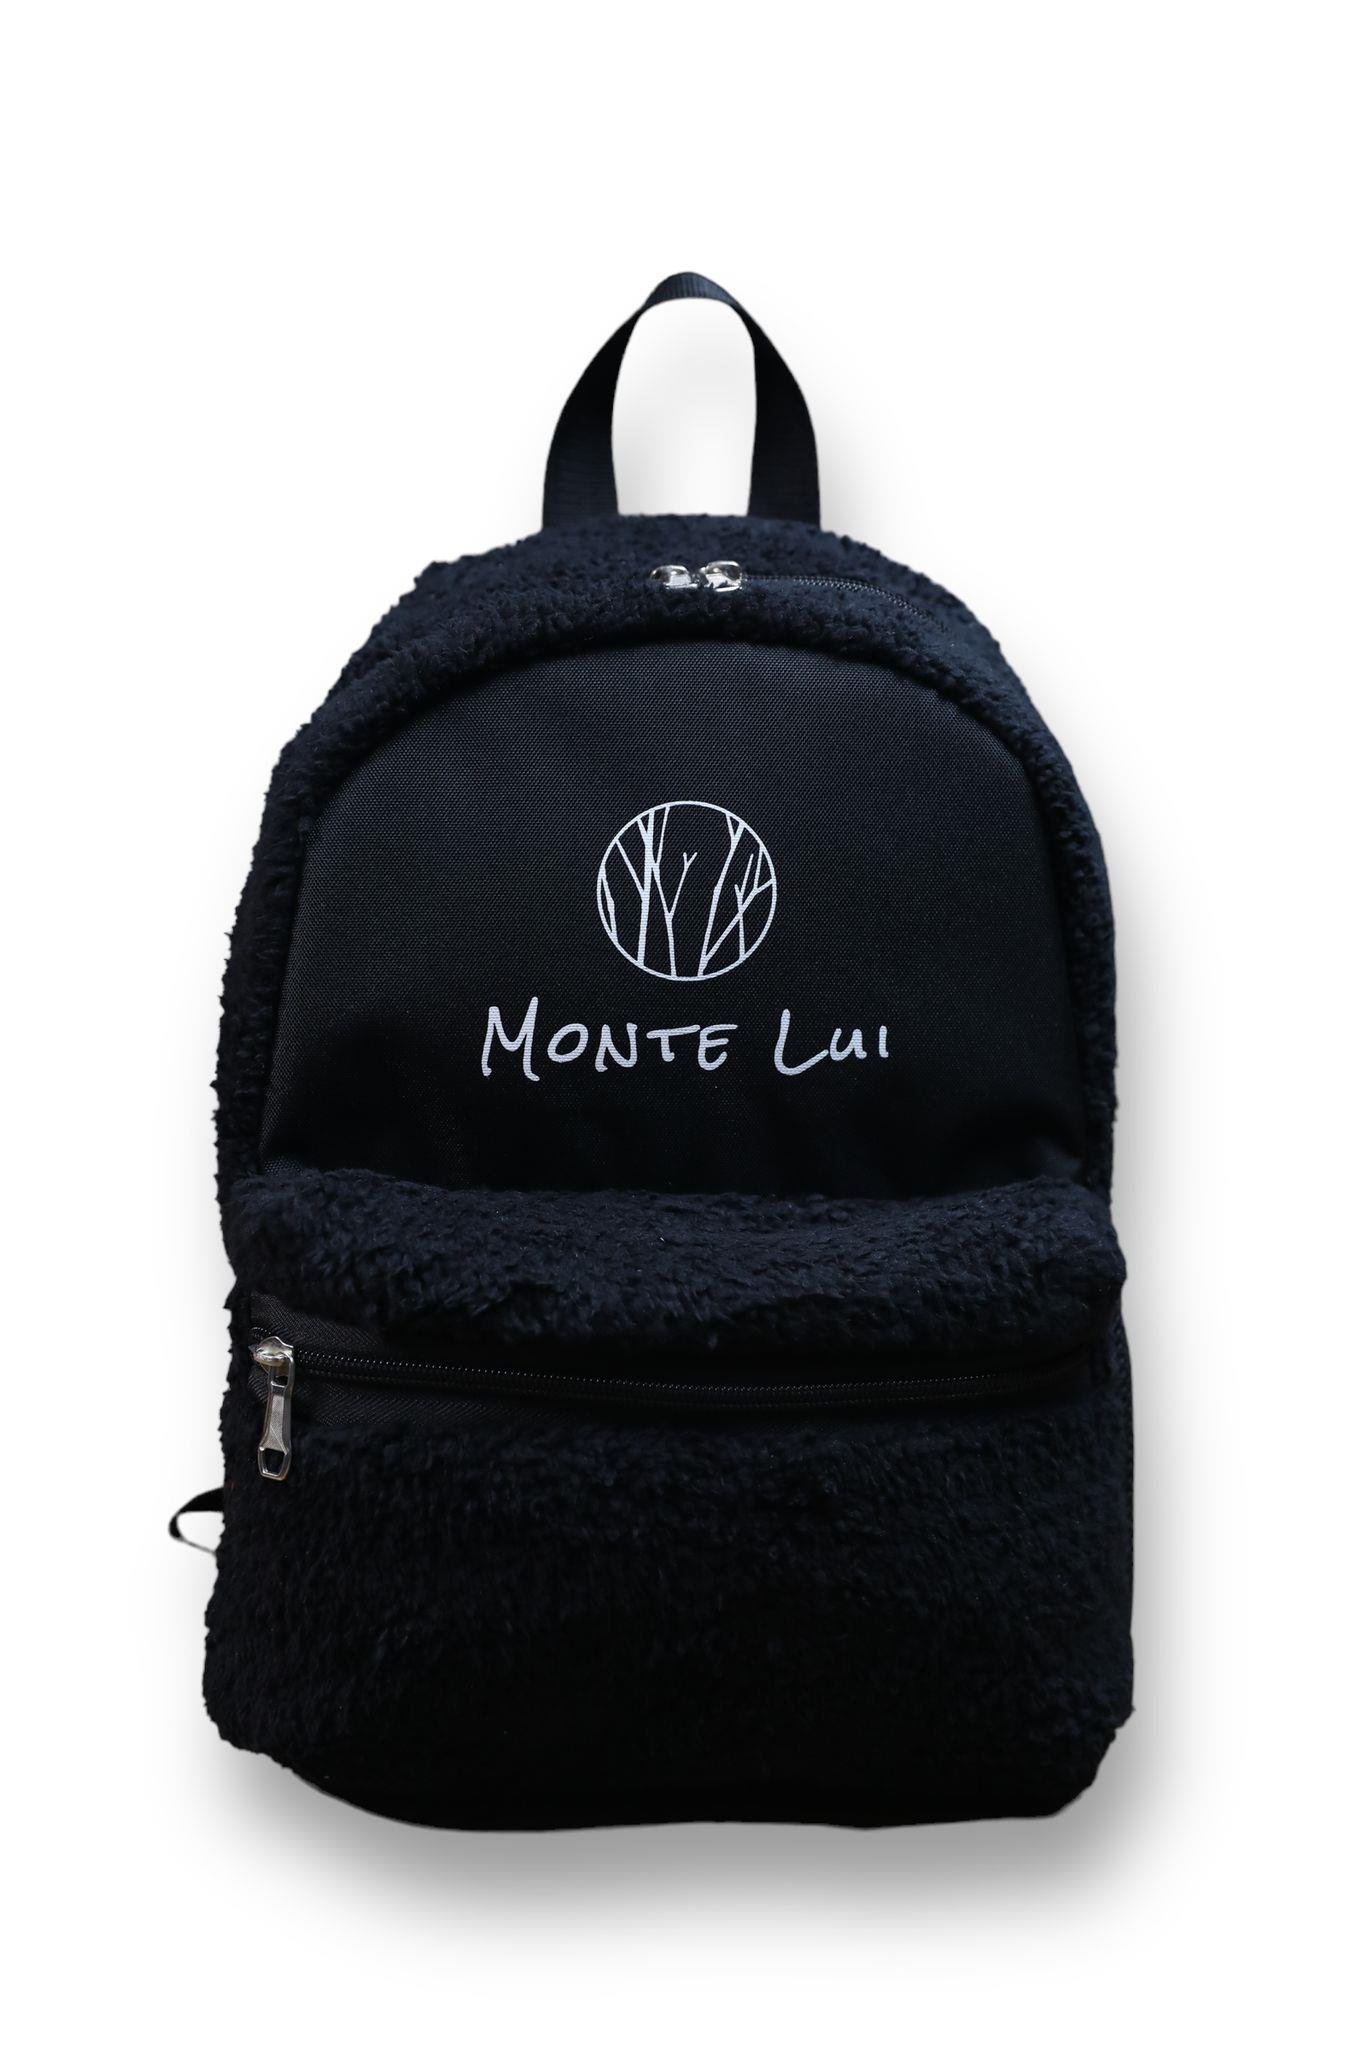 Monte Lui - Kadın Çanta Modelleri ve Fiyatları